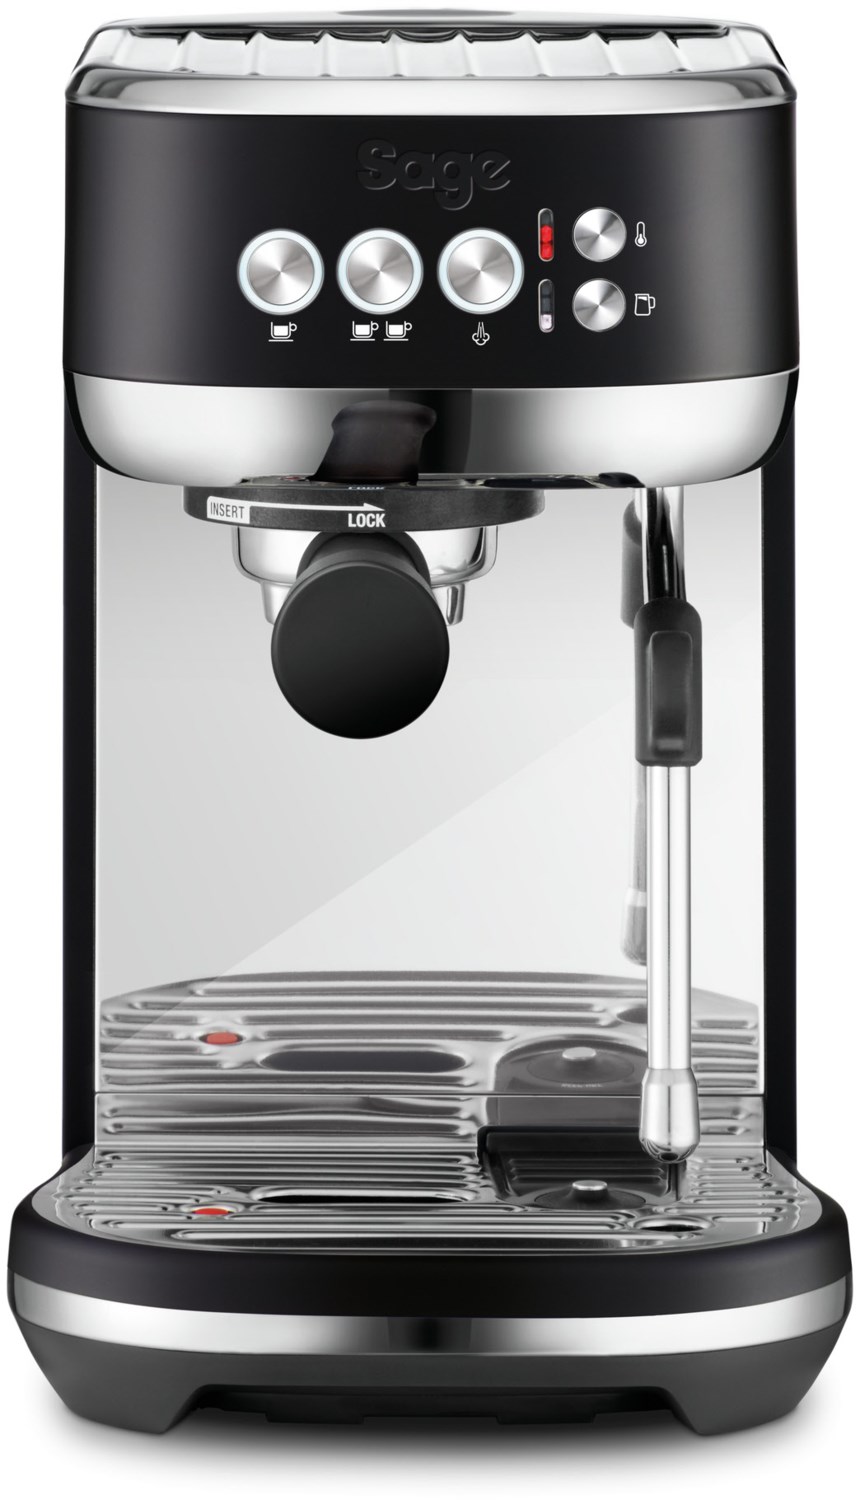 Sage Bambino Plus 1600 W - Edelstahl Druck-kaffeemaschine / Espressomaschine